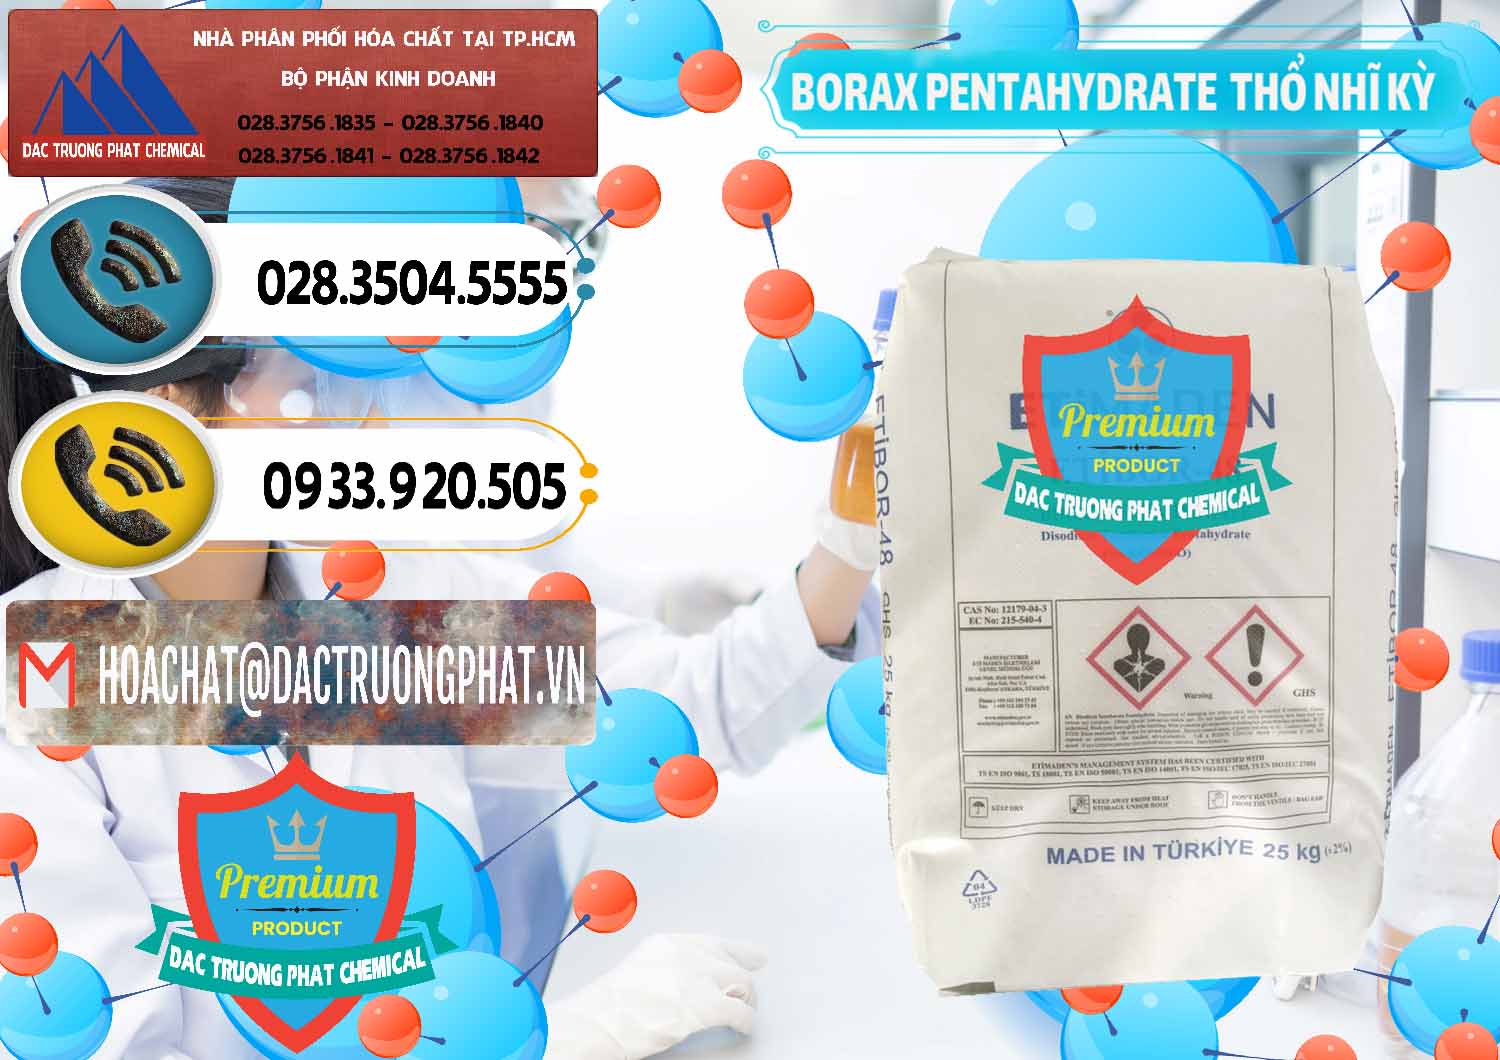 Nơi chuyên bán và cung ứng Borax Pentahydrate Thổ Nhĩ Kỳ Turkey - 0431 - Nơi chuyên cung ứng _ phân phối hóa chất tại TP.HCM - hoachatdetnhuom.vn